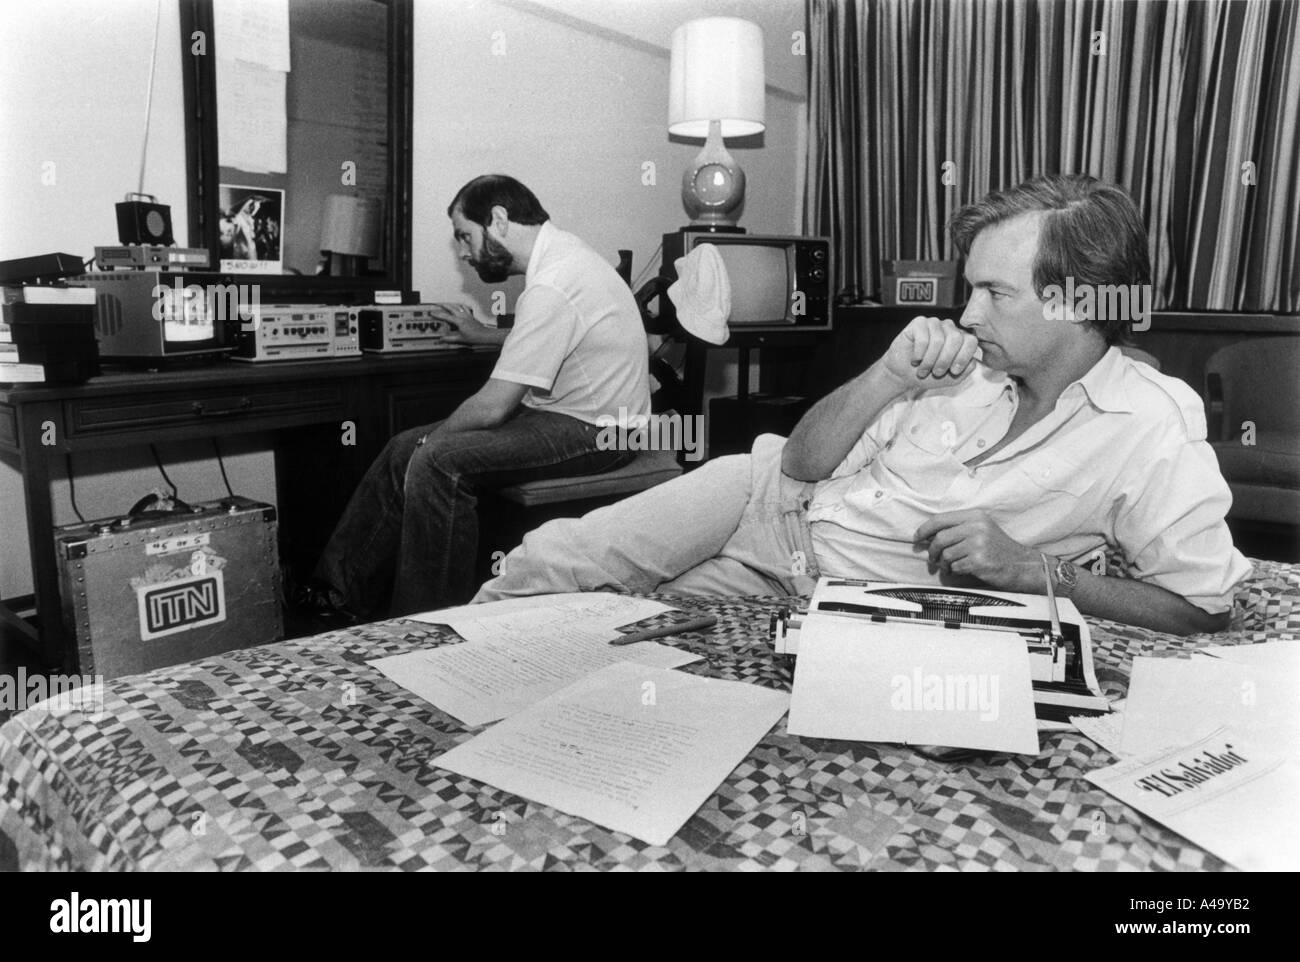 L'hotel Camino Real, San Salvador, marzo 1982; ITN TV reporter news John Snow lavora con editor video Bill gelo su un 3 minuti di pacchetto per essere rinominata a Londra via Managua e New York. Ci sono volute 3 ore per mettere il pacchetto insieme. Foto Stock